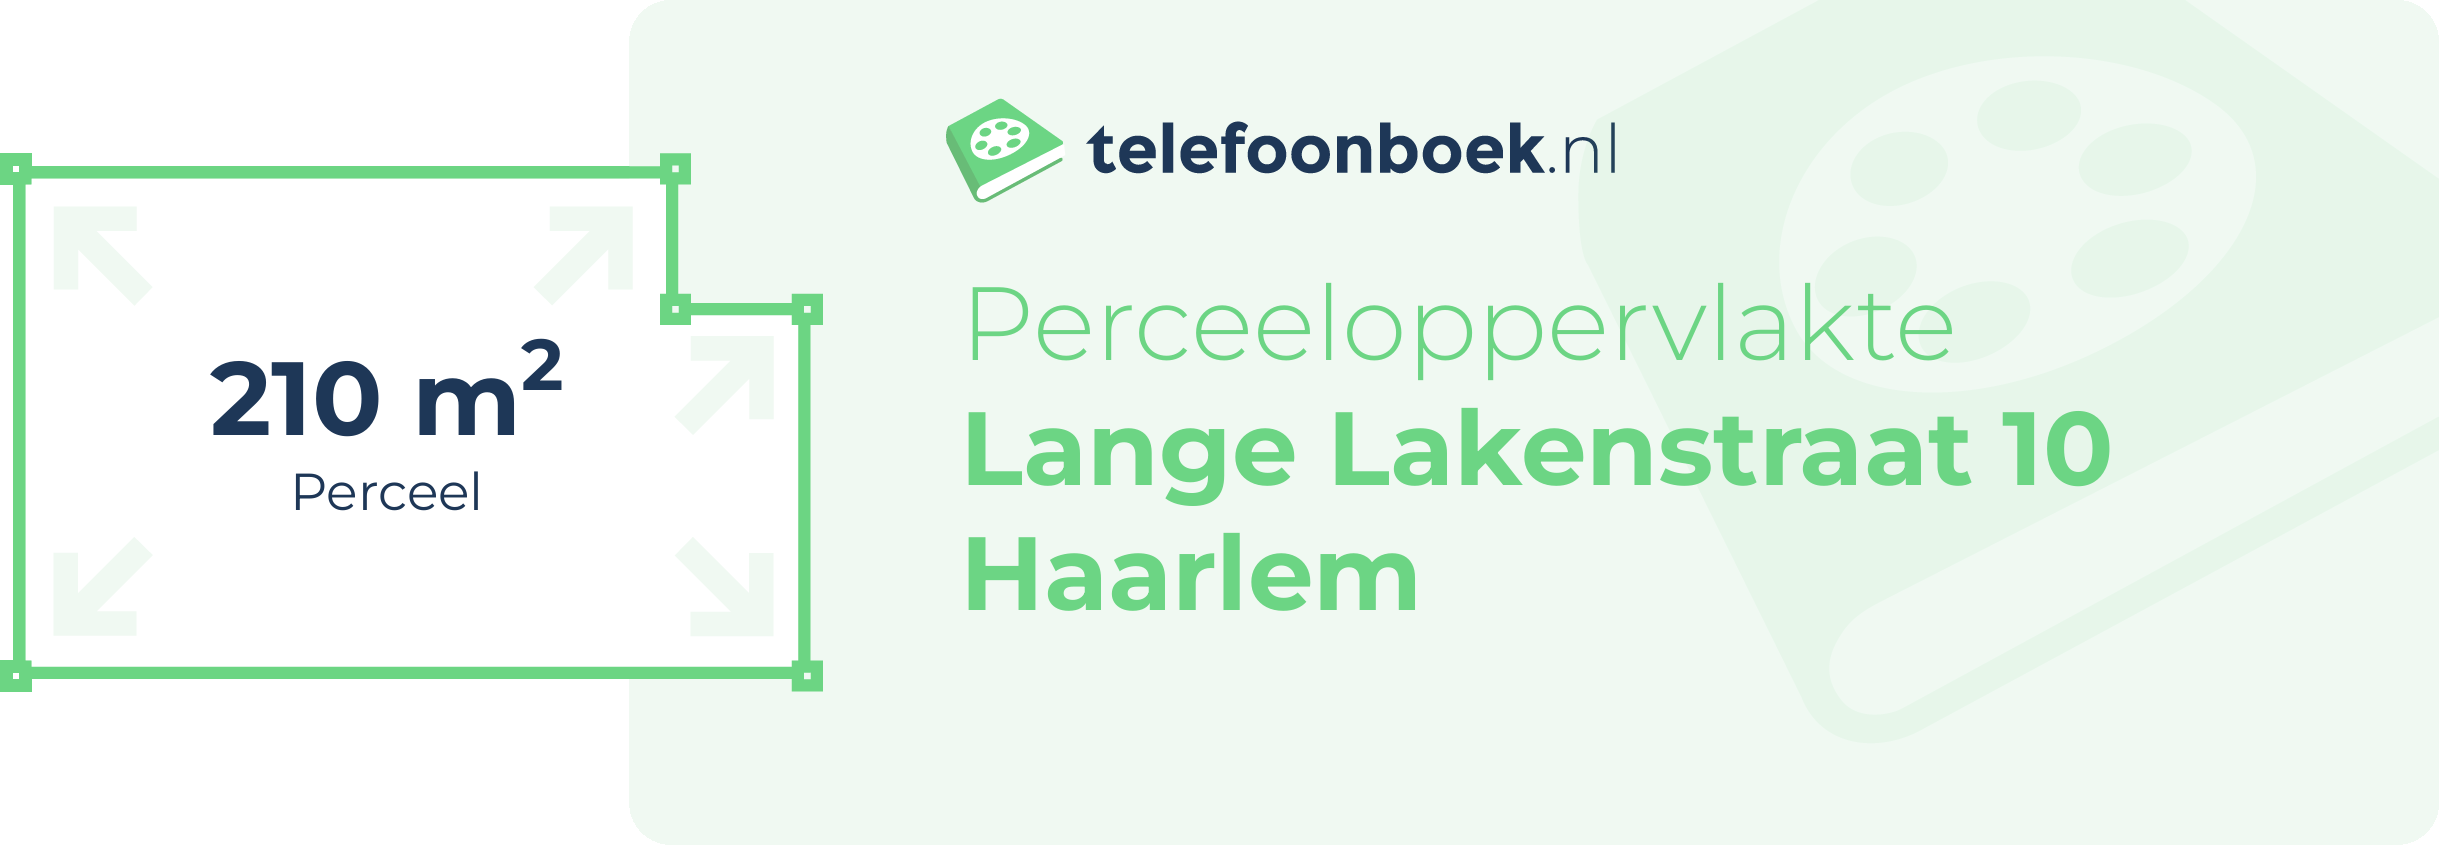 Perceeloppervlakte Lange Lakenstraat 10 Haarlem